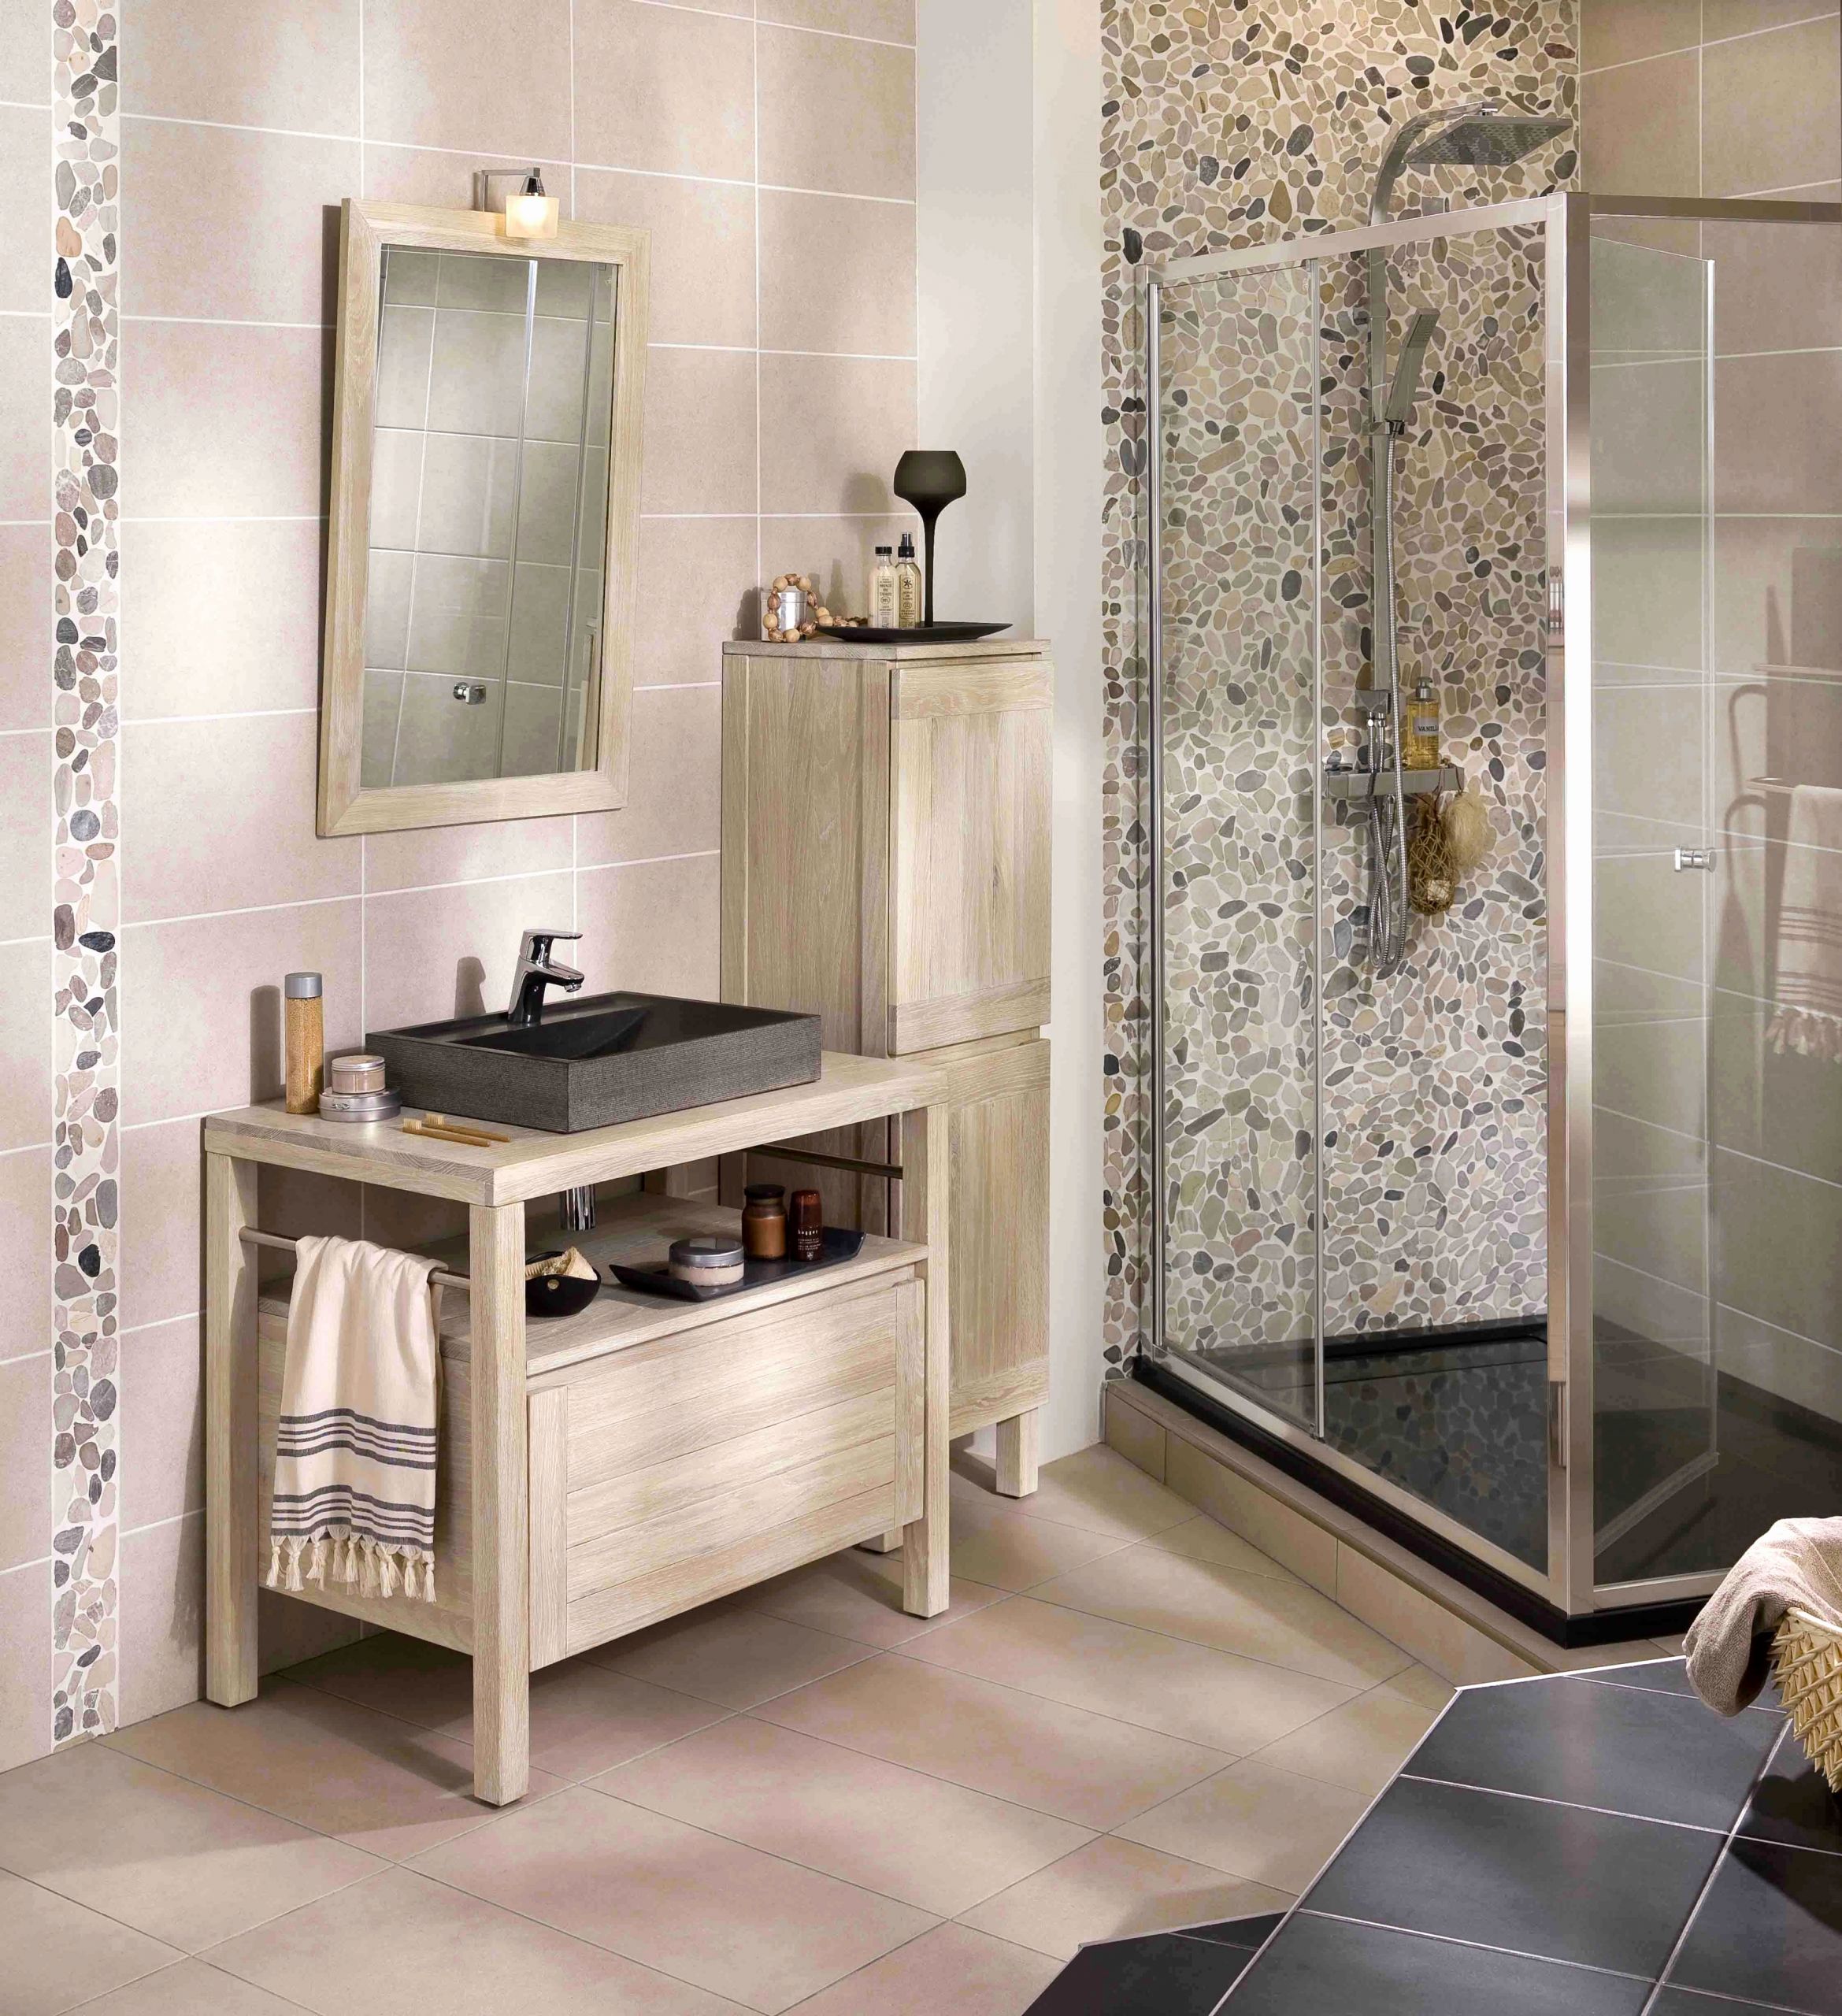 siege salle de bain design le meilleur de salle de bain retro inspirant deco salle de bain retro meubles et of siege salle de bain design